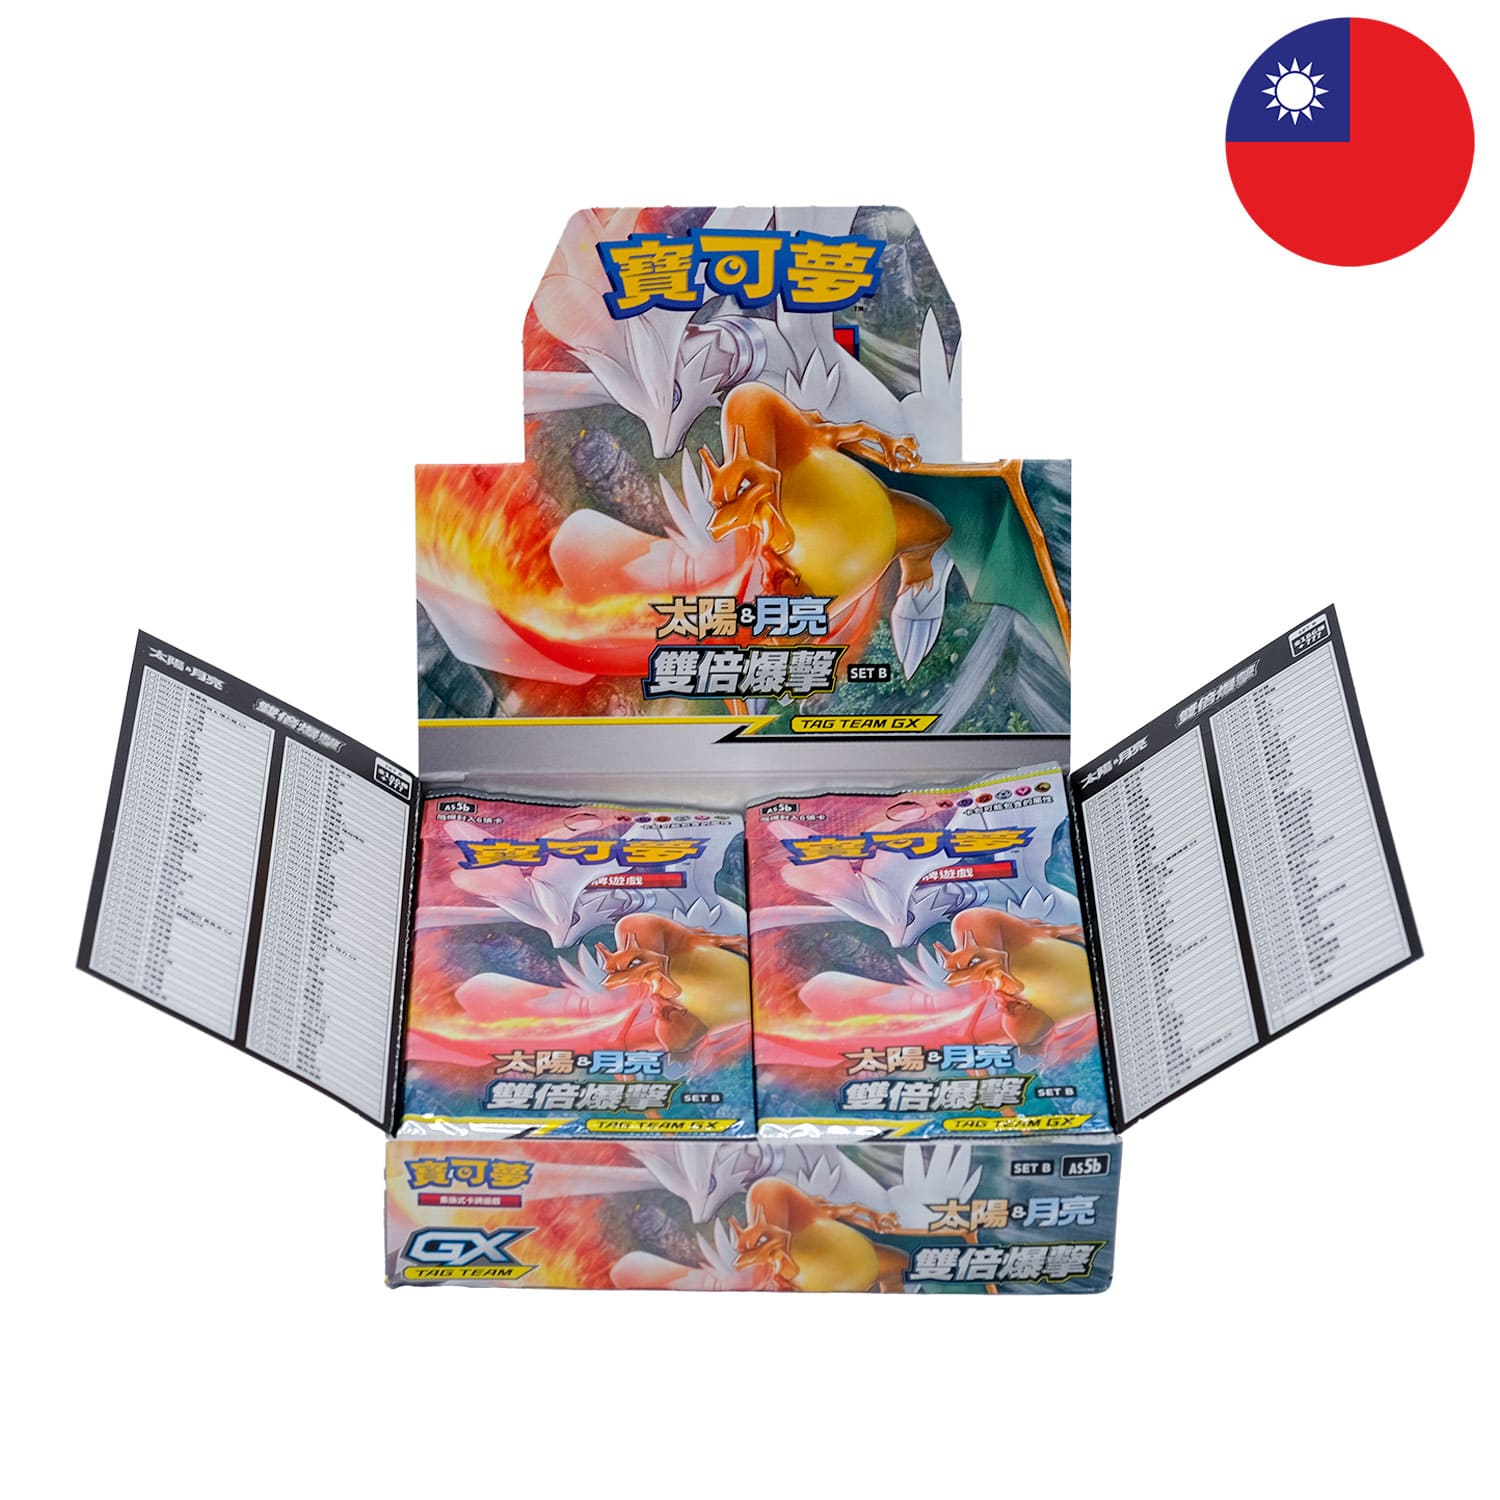 Das Tag Team GX Pokemon Display Double Burst: Double Blaze und dem Boosterpack anliegend, mit der Flagge Chinas in der Ecke.